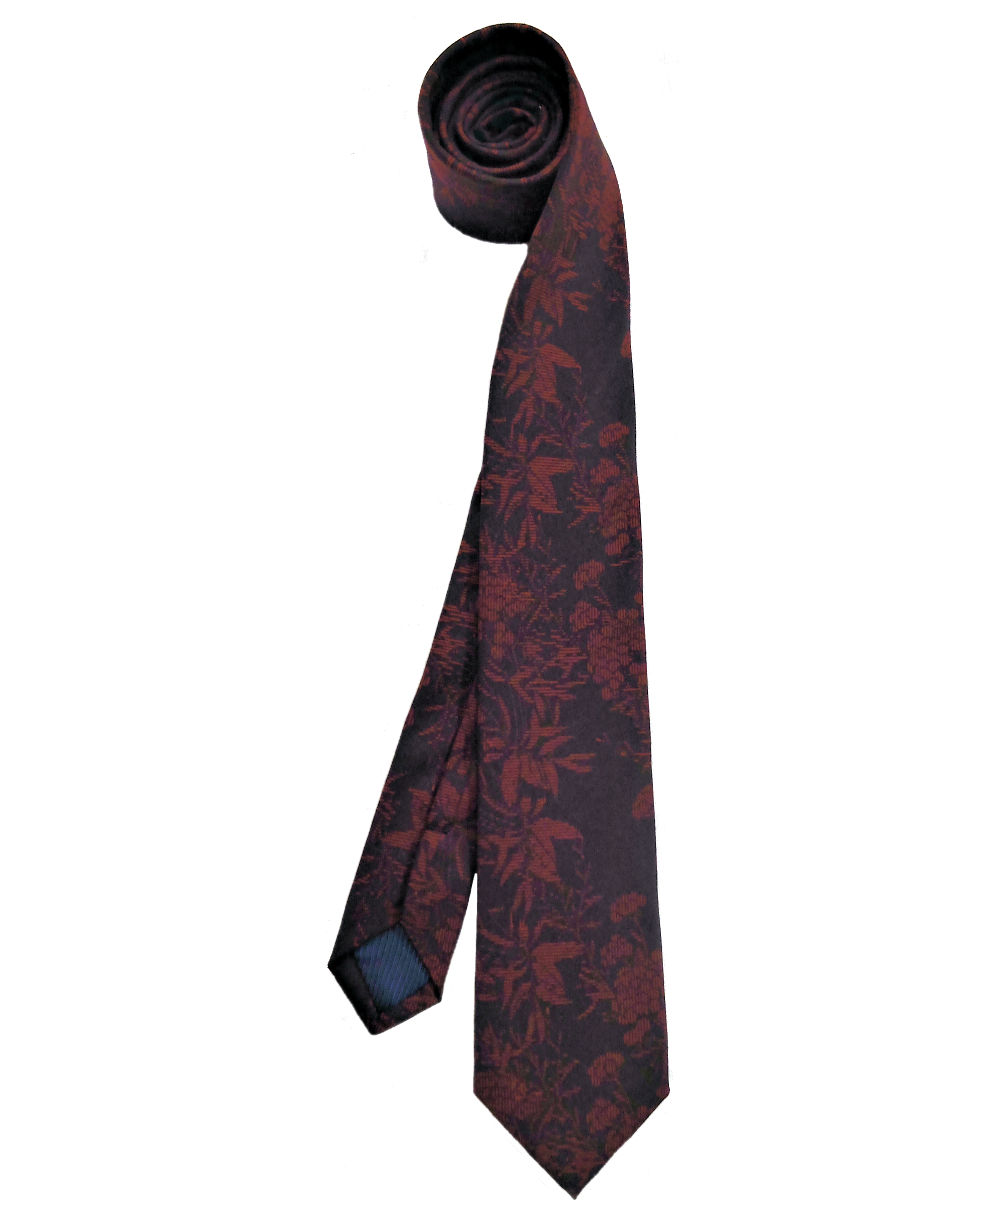 zu führender eterna Hochwertige Slimfit - Marken Herrenmode Krawatte fairen